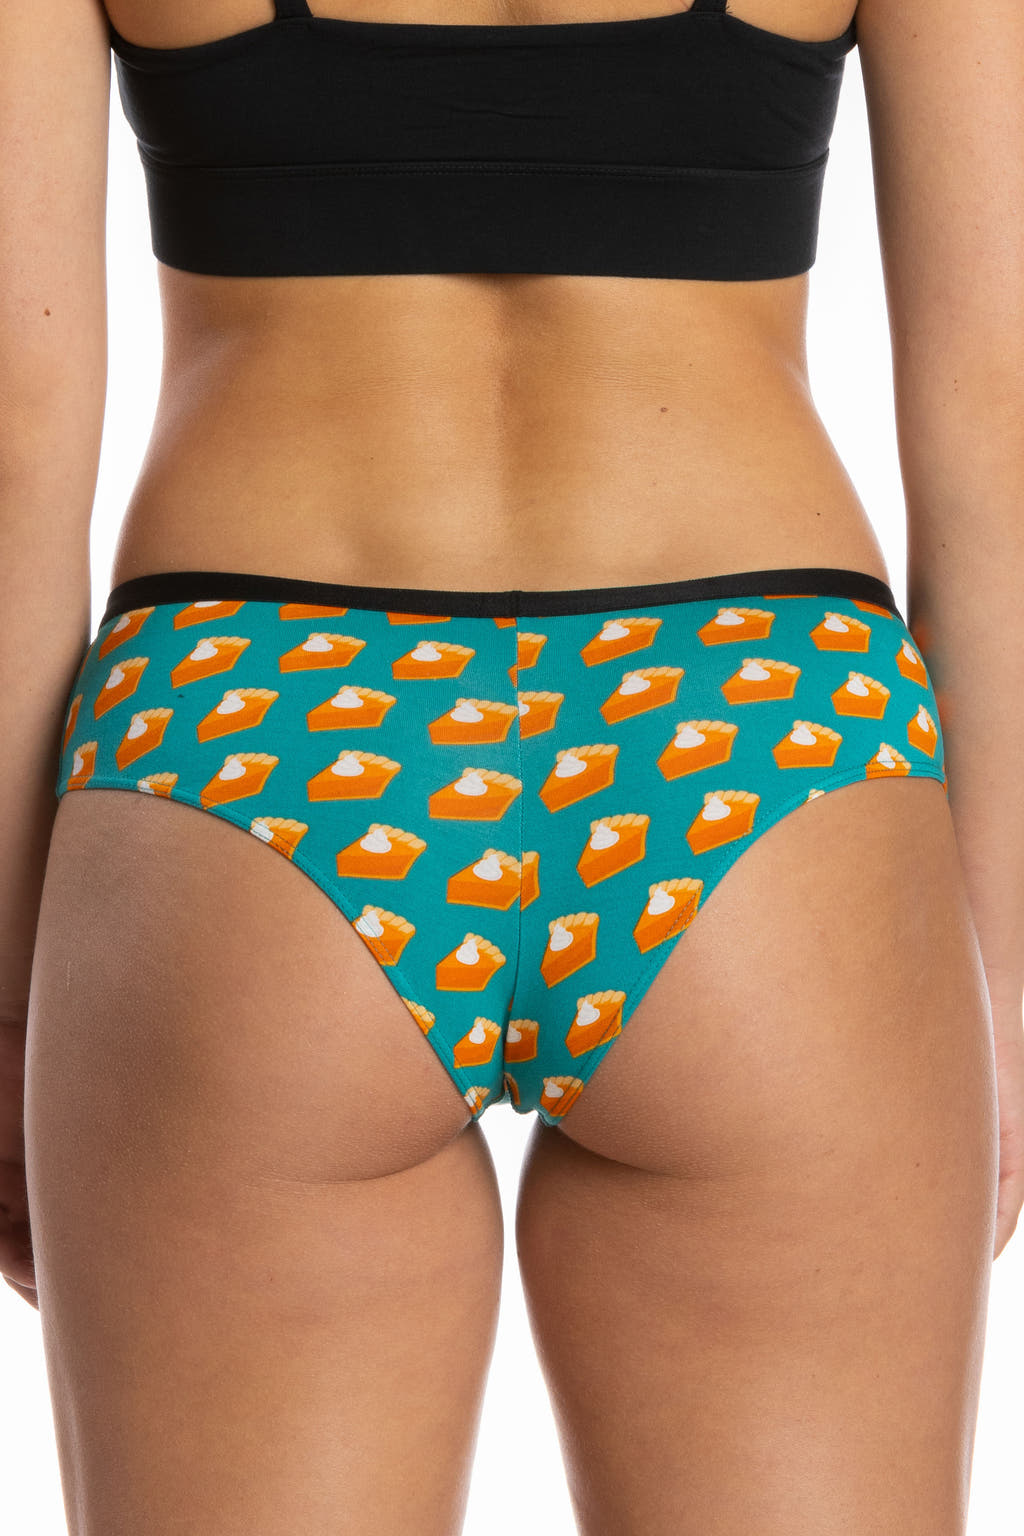 A woman's bottom wearing The Last Course | Pumpkin Pie Cheeky Underwear.